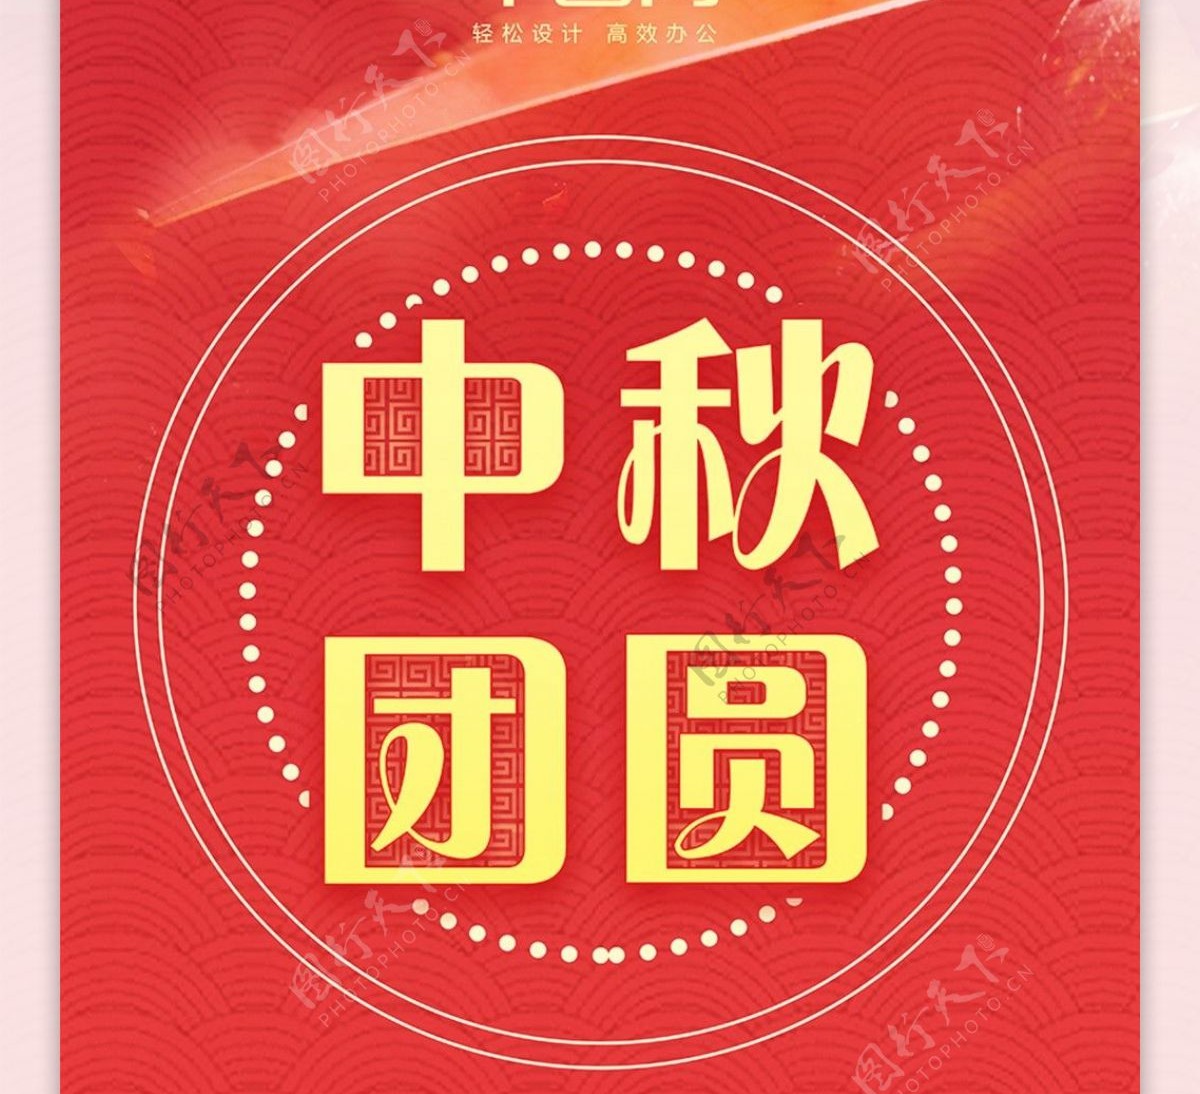 红色中国风中秋餐馆特惠祥云节日促销展架